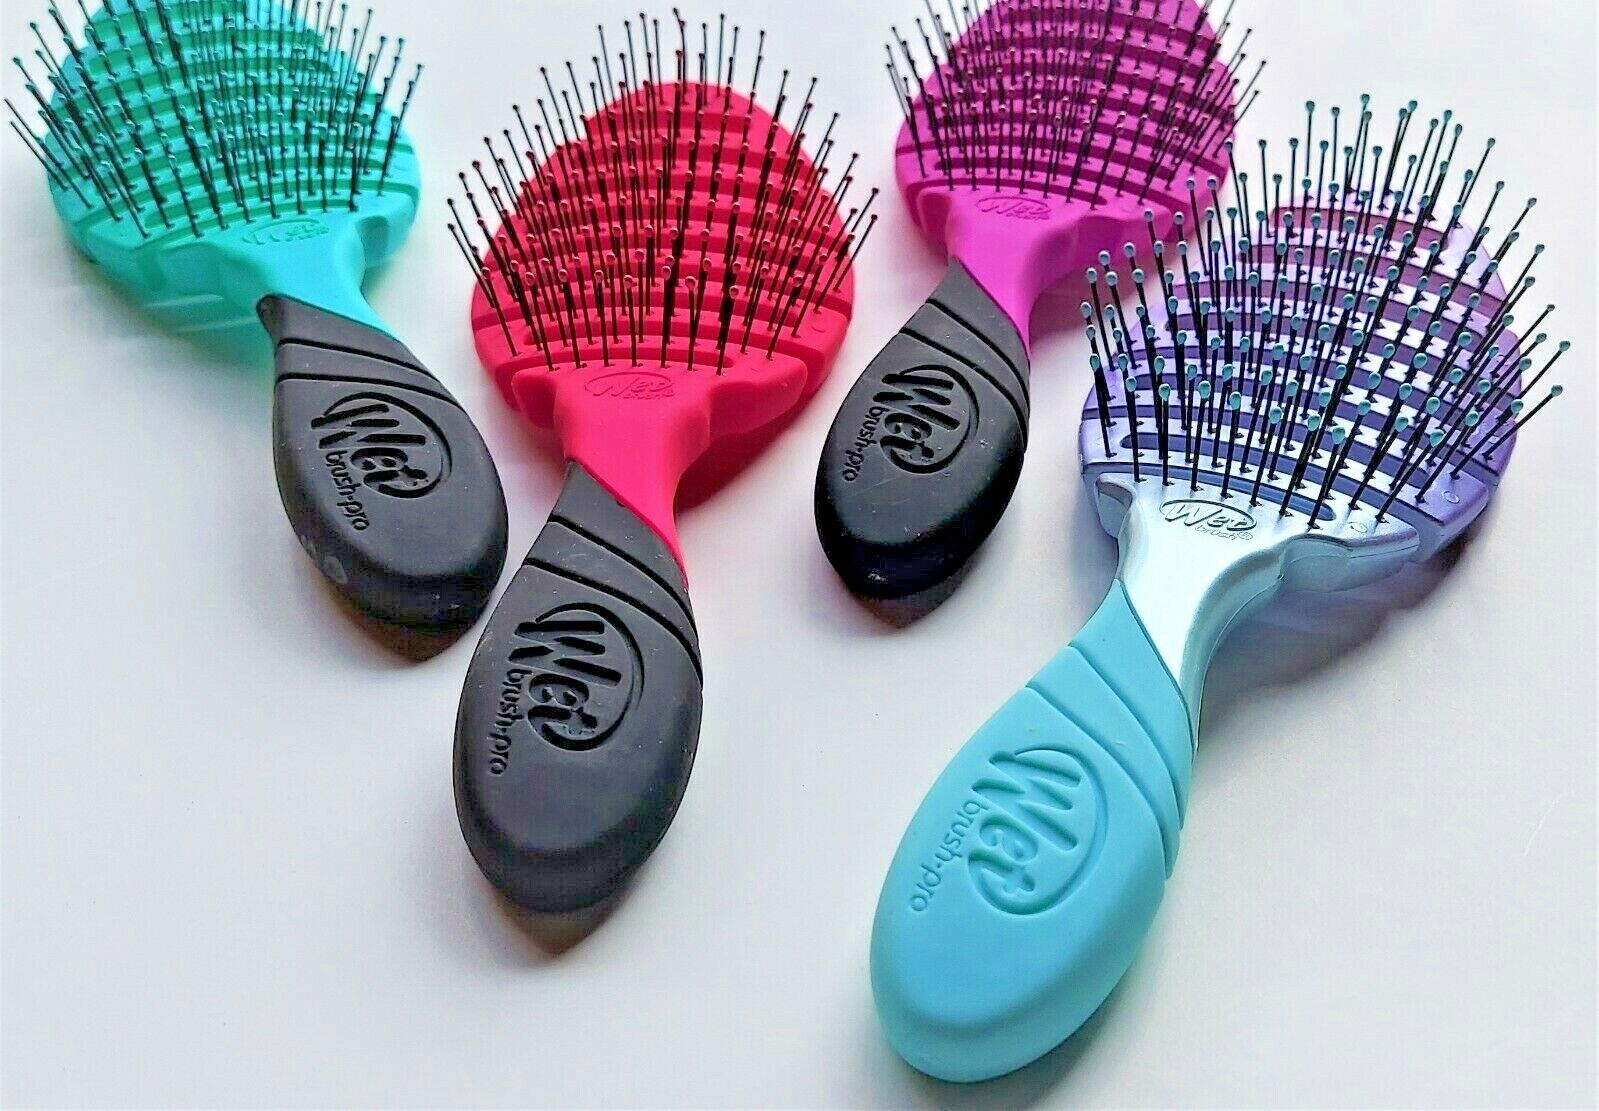 Wet Brush Pro Detangling Vented Hair Brush FLEX DRY / OMBRE 1pc -- FREE  SHIPPING | eBay